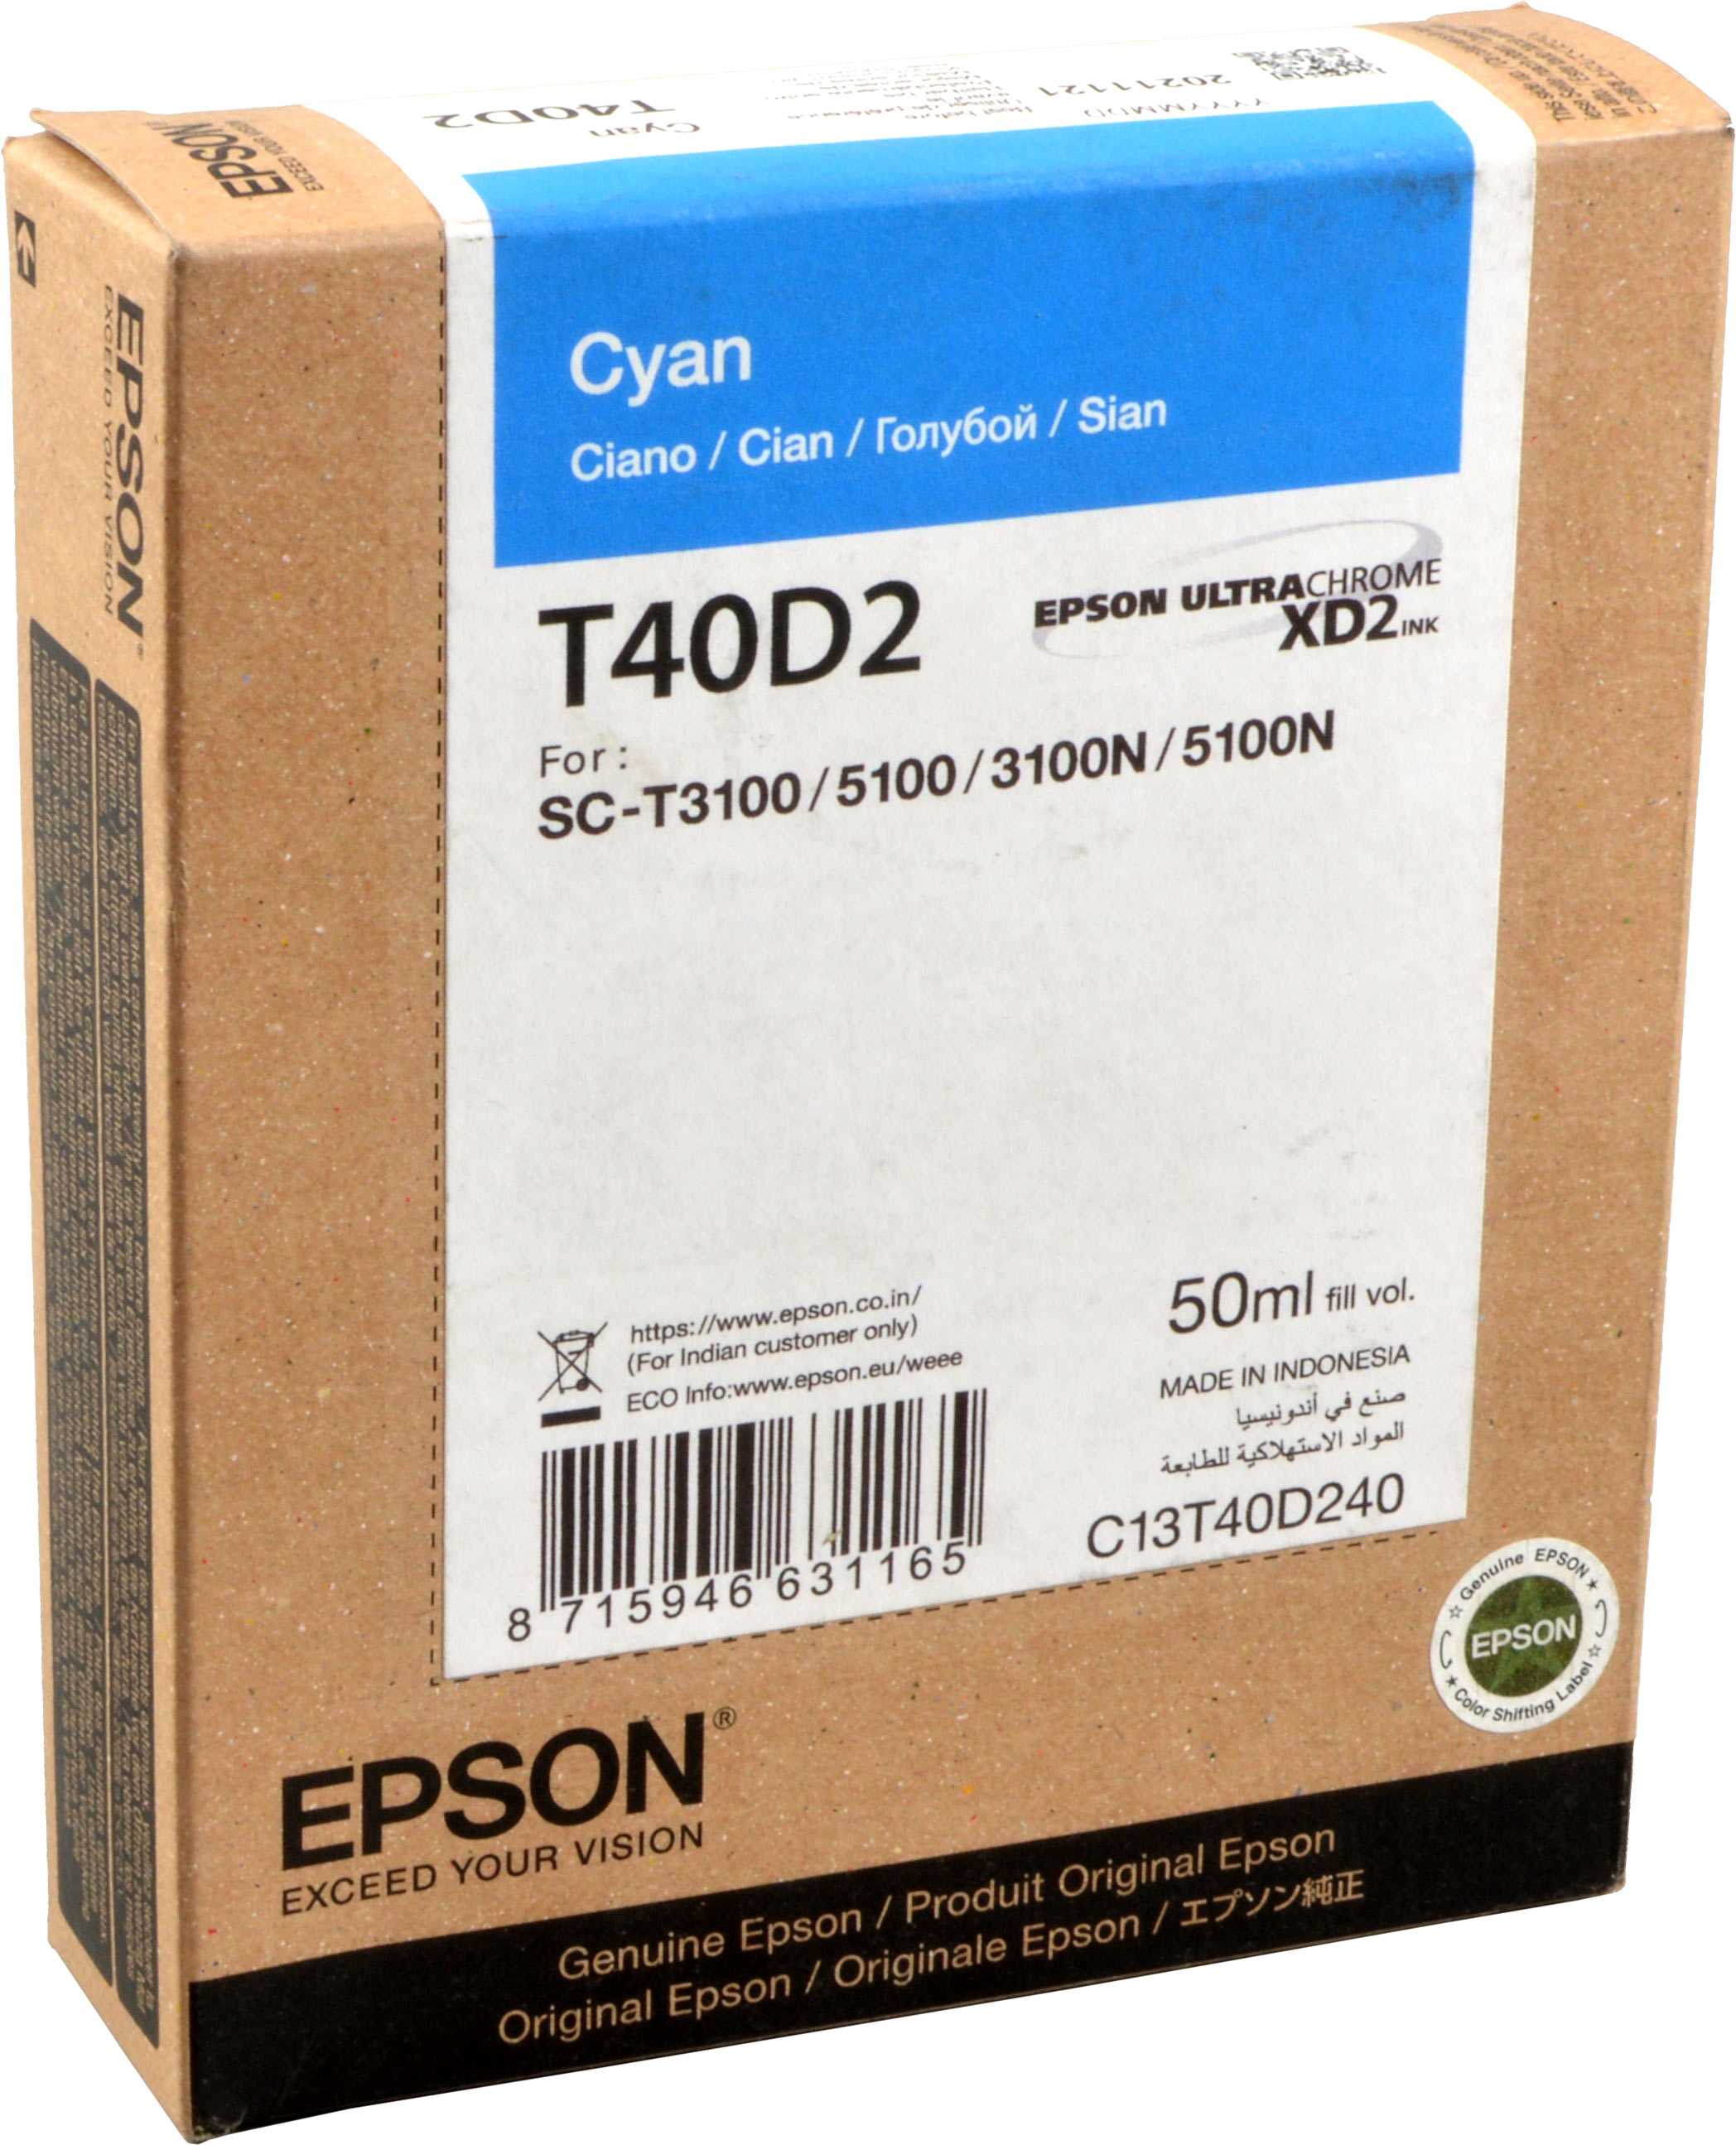 Epson Tinte C13T40D240  Cyan  T40D2